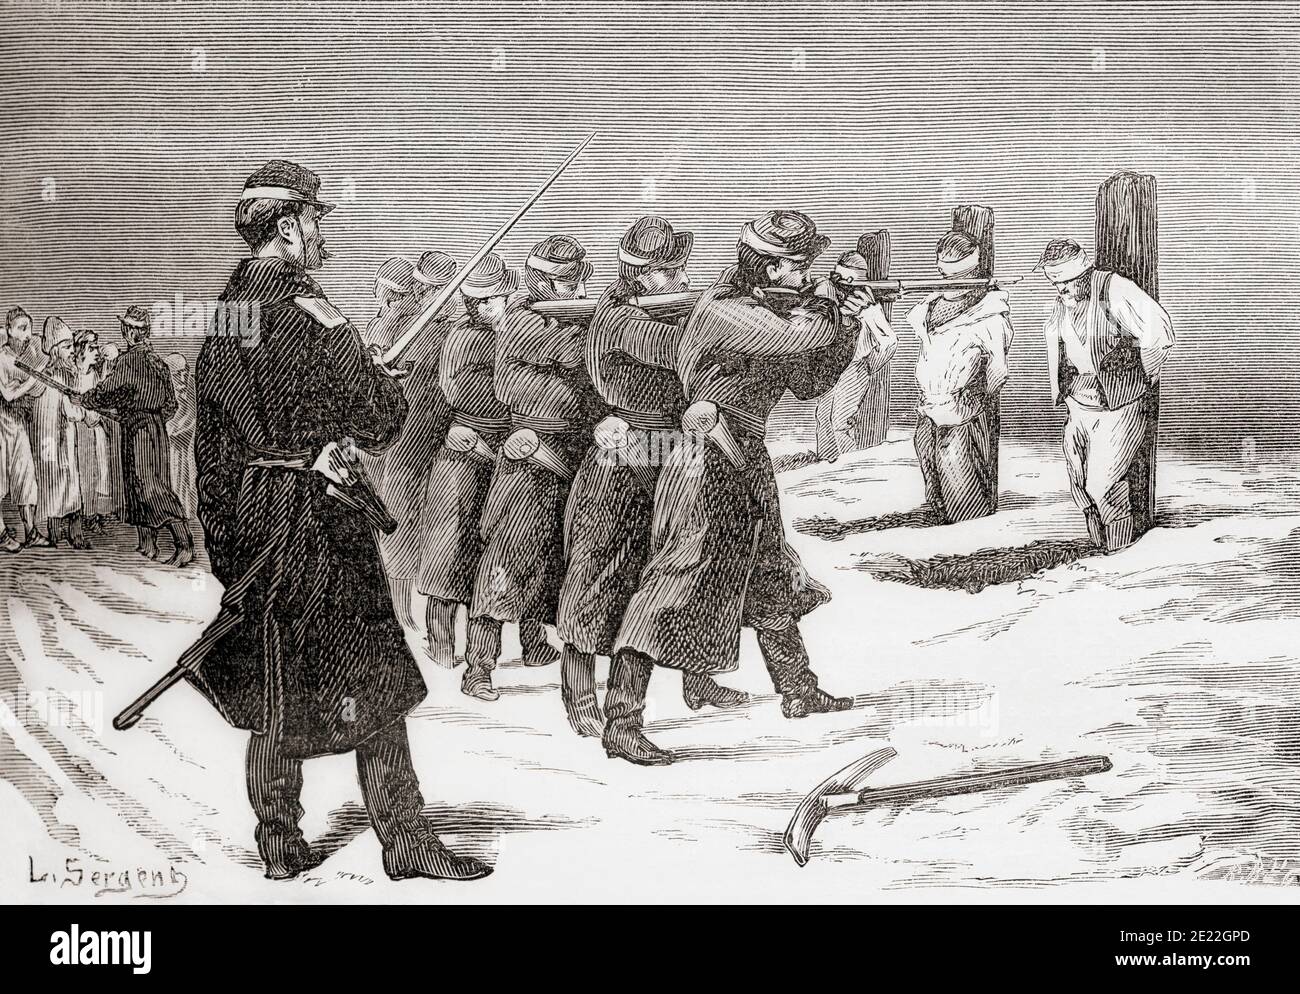 L'exécution d'un groupe de Bashi-Bazouks, soldats irréguliers de l'armée ottomane, par des soldats russes pendant la guerre russo-turque (1877-1878). De Russes et Turcs, la guerre d'Orient, publié en 1878 Banque D'Images